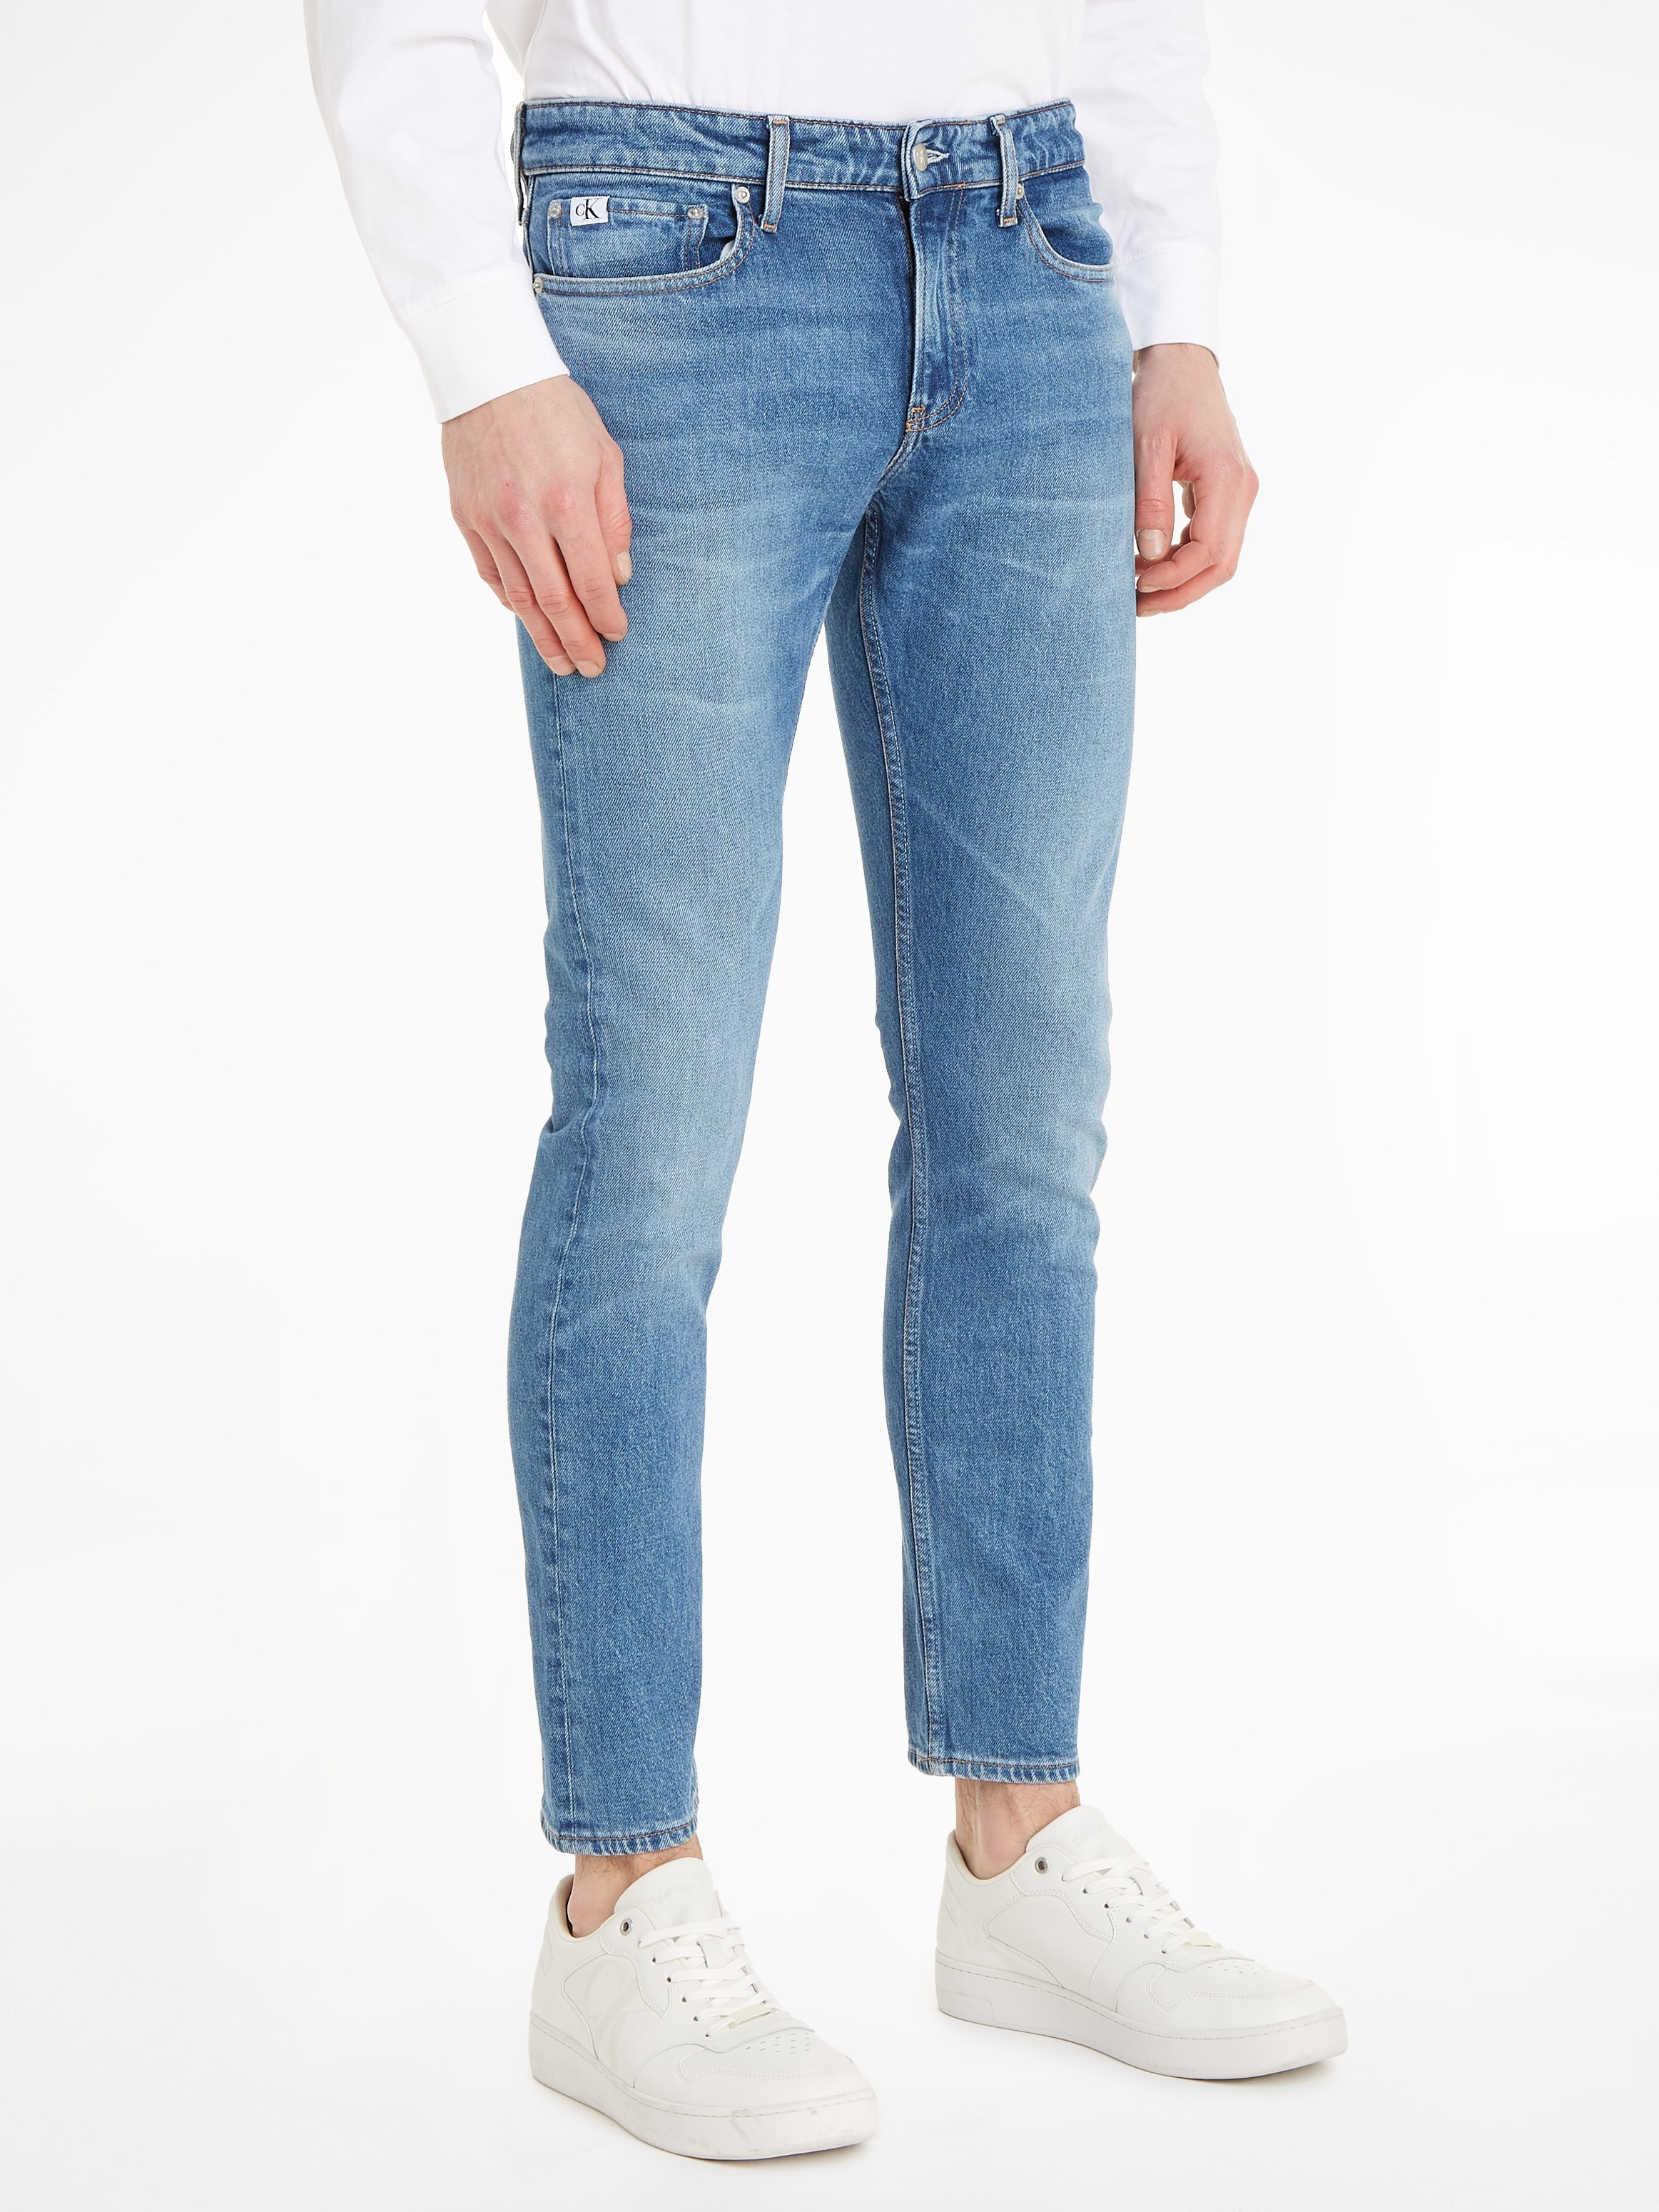 auf Jeans ➤ Rechnung shoppen